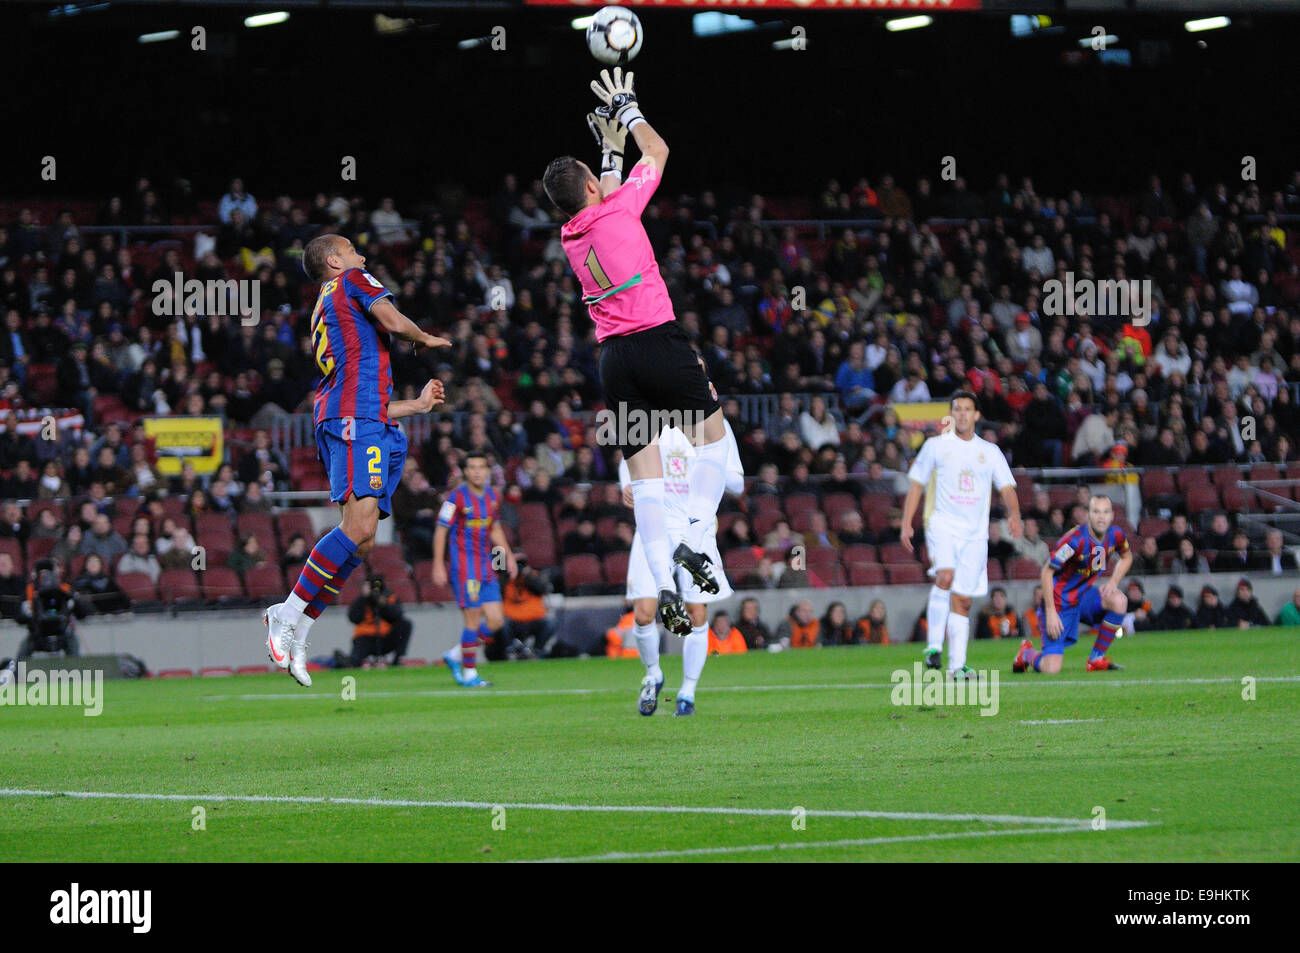 Barcelone - NOV 10 : Dani Alves, F.C Barcelone dvd, joue contre la Leonesa au Camp Nou sur la coupe d'Espagne. Banque D'Images